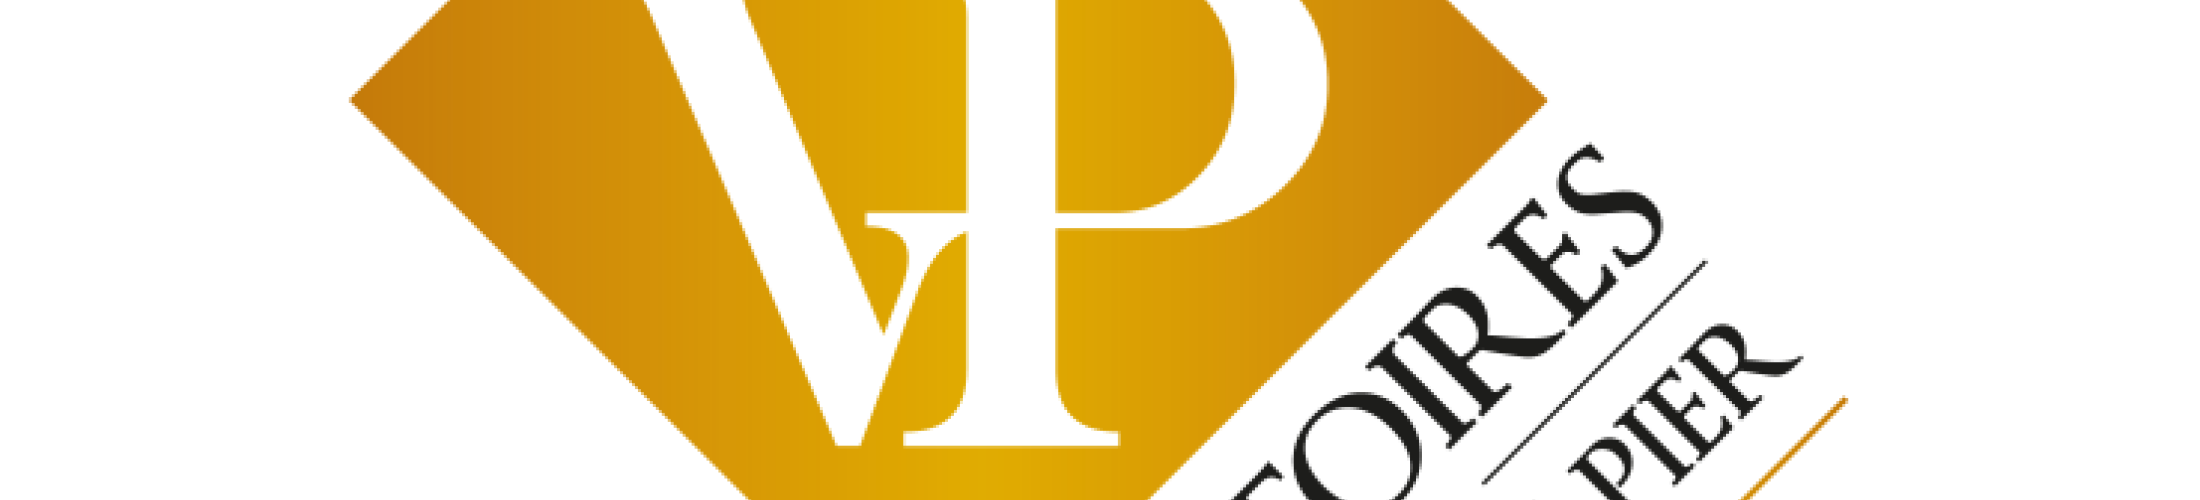 logo-victoires-de-la-pierre-papier.png